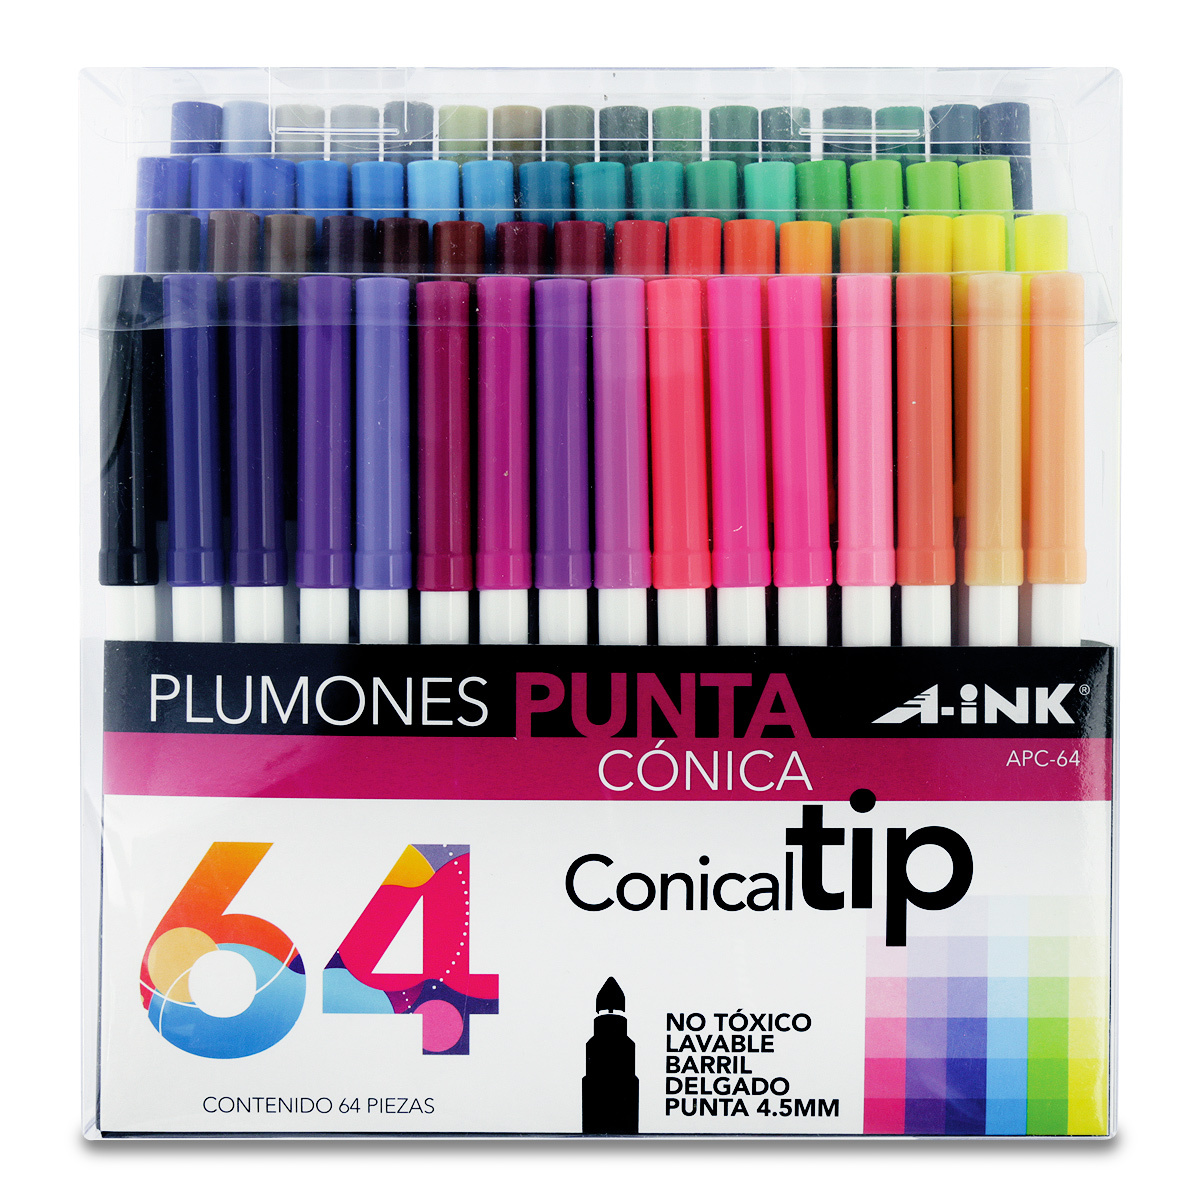 Plumones A-ink Conical Tip APC-64 Lavables Punta cónica Colores surtidos 64  piezas | Office Depot Mexico